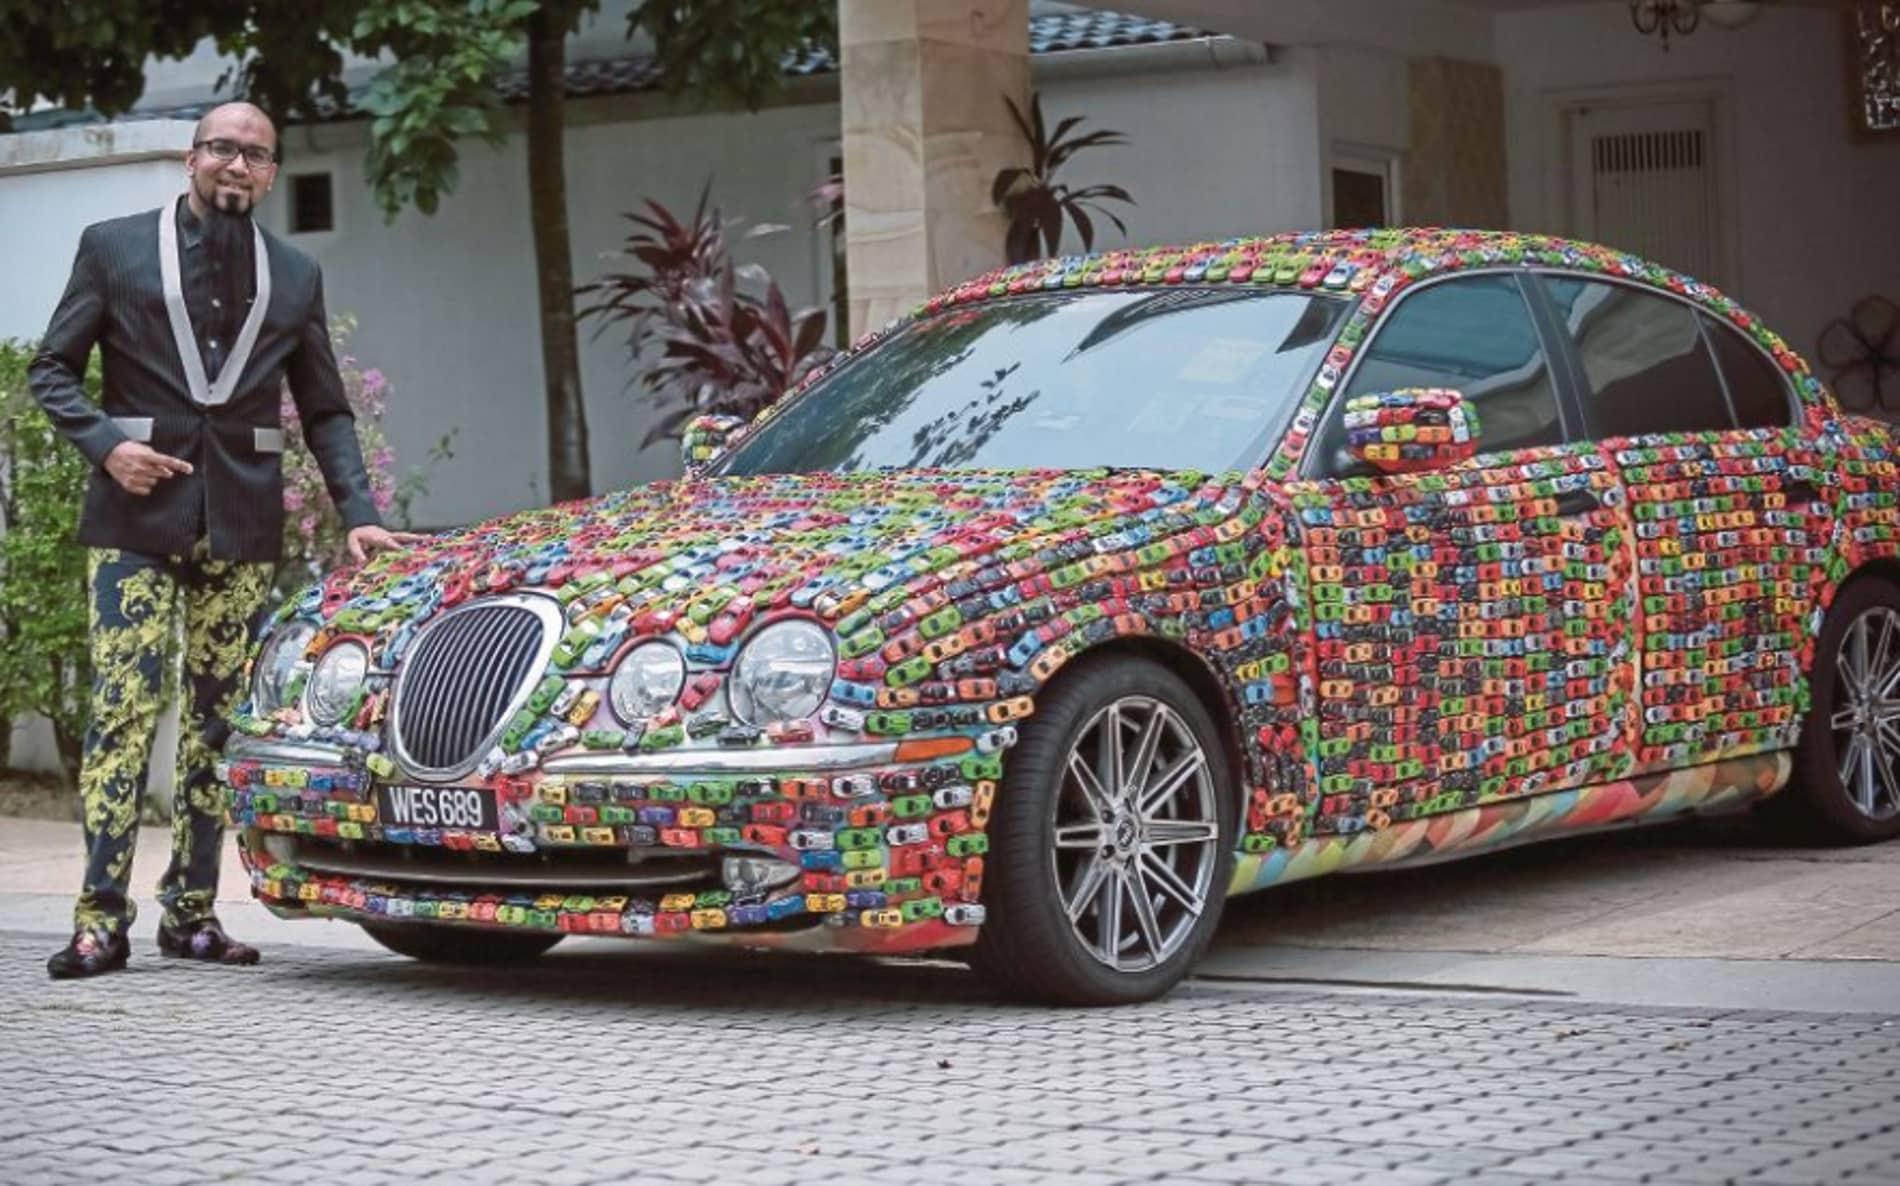 Facoltoso imprenditore si fa decorare la sua costosa auto con 4.600 automobiline giocattolo